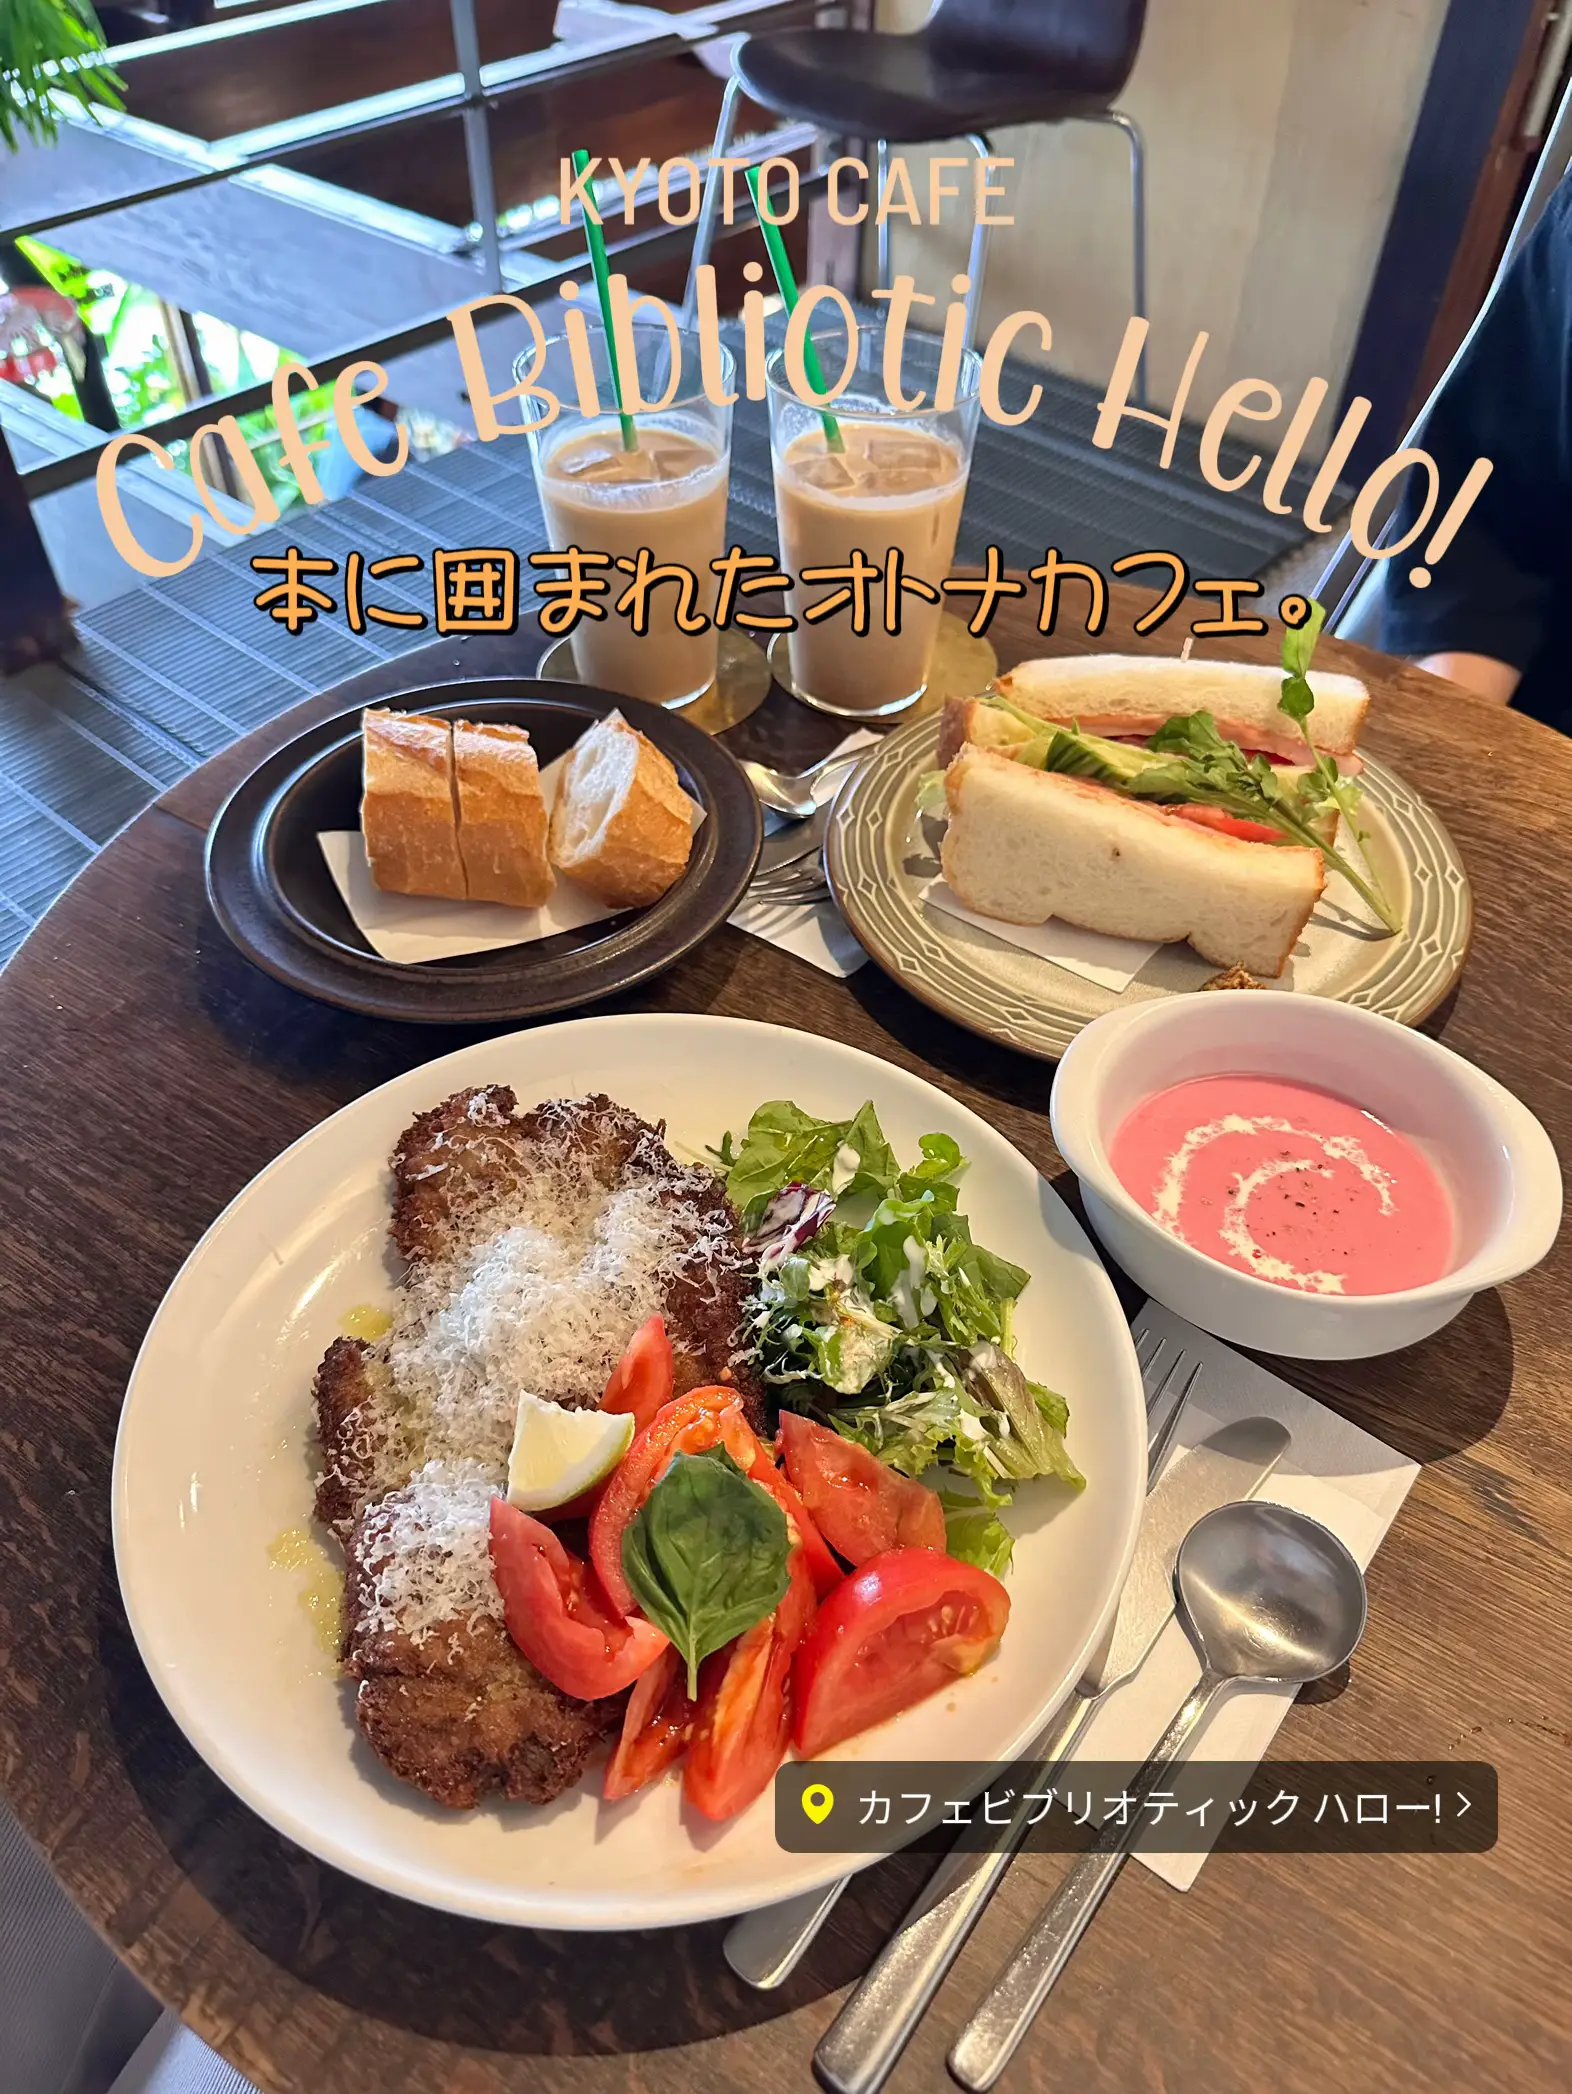 Cafe Bibliotic Hello ビブリオティック ハロー メニュー - Lemon8検索